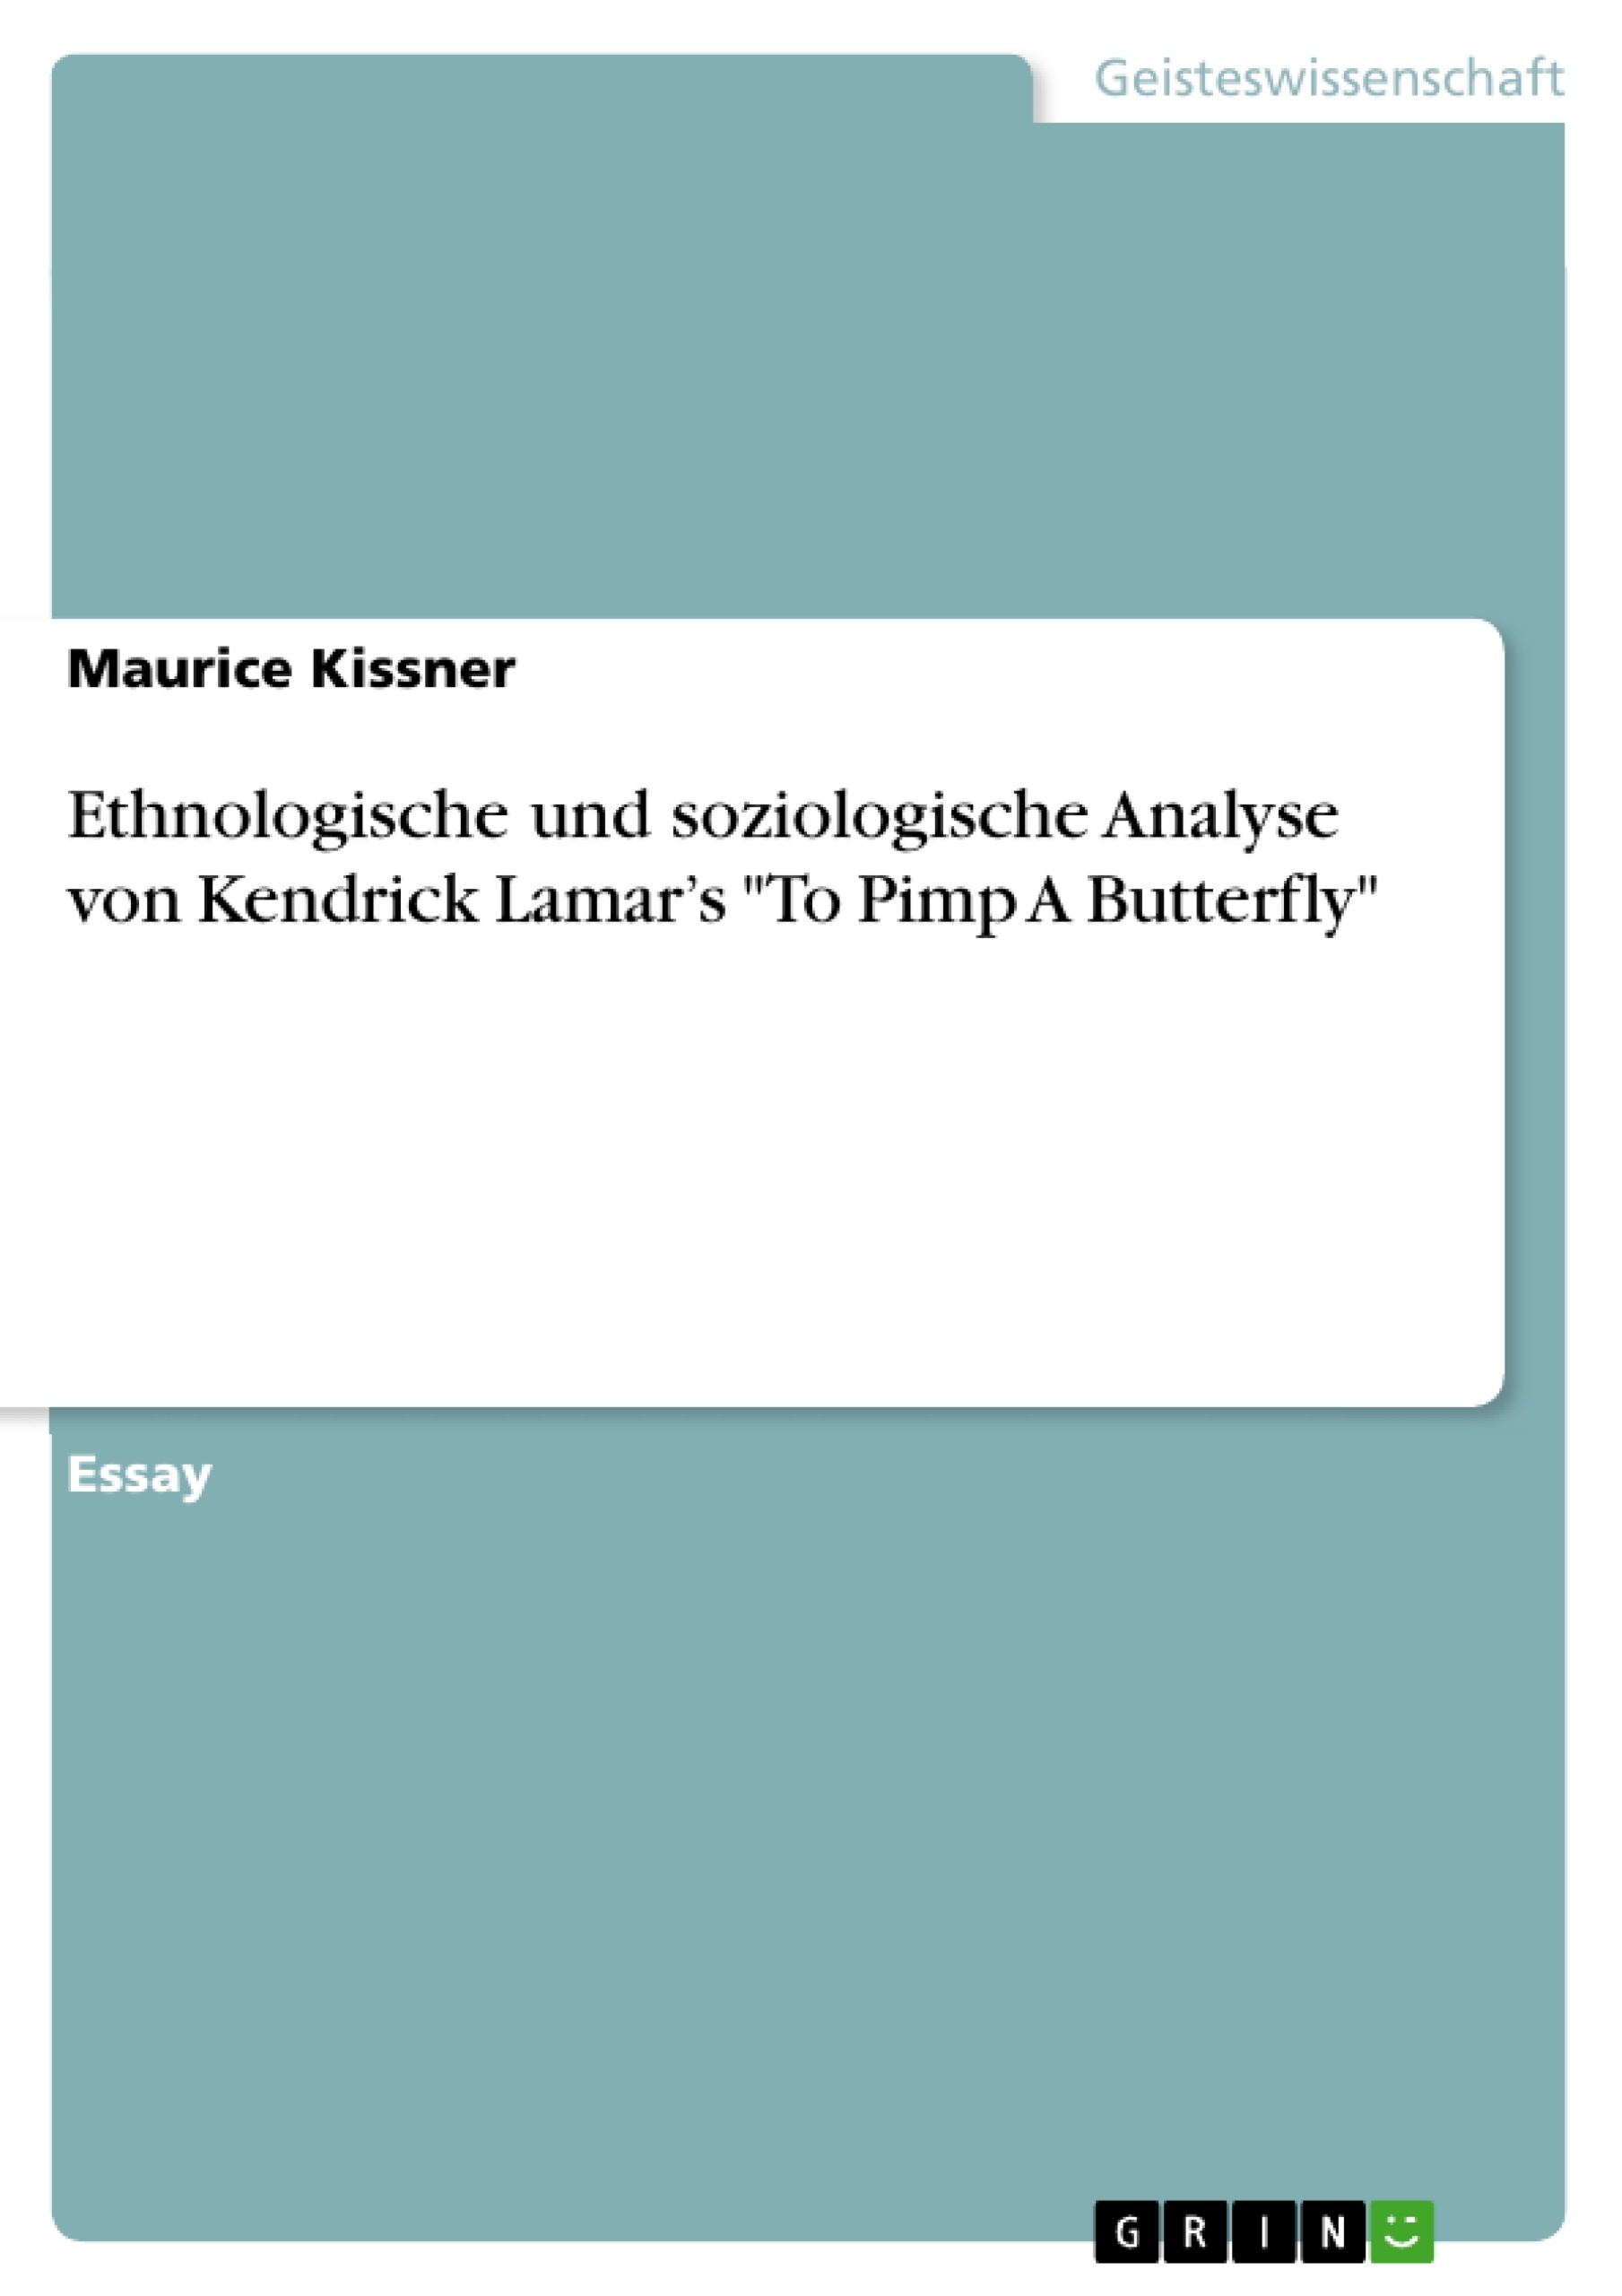 Titre: Ethnologische und soziologische Analyse von Kendrick Lamar’s "To Pimp A Butterfly"